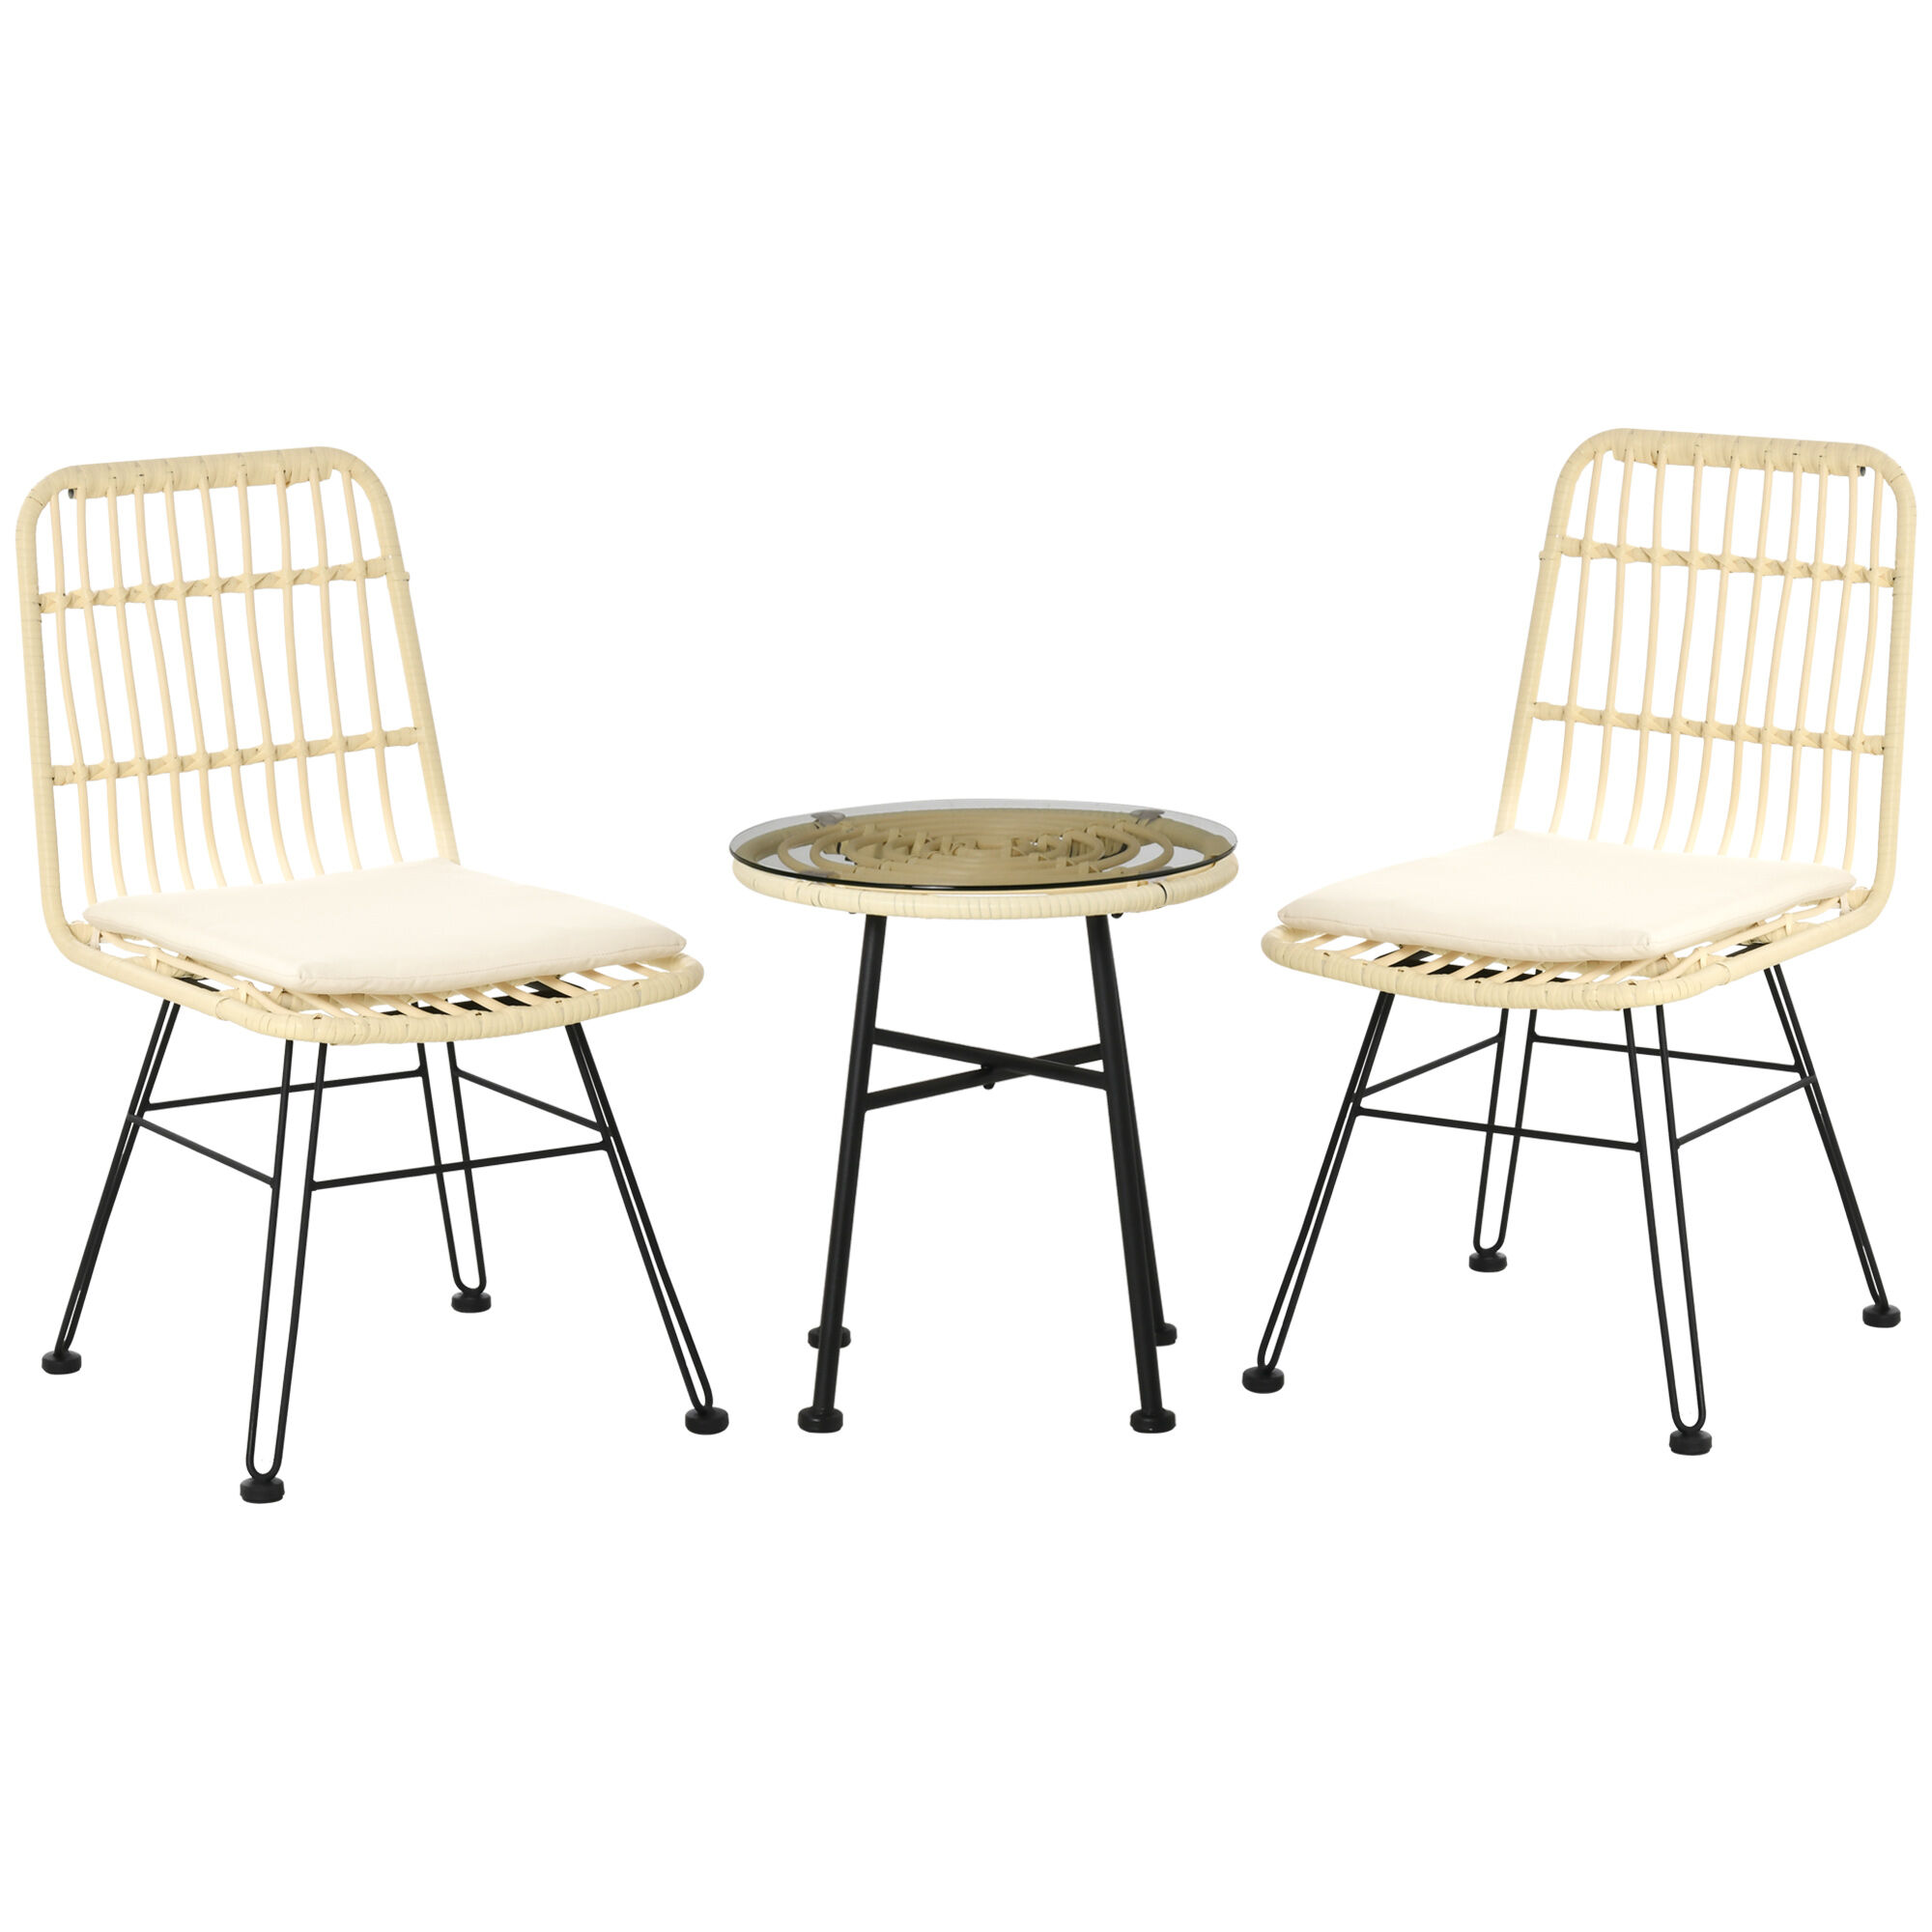 Outsunny Ensemble bistro de jardin 2 places 3 pièces style exotique 2 chaises + table basse ronde métal époxy noir résine tressée beige